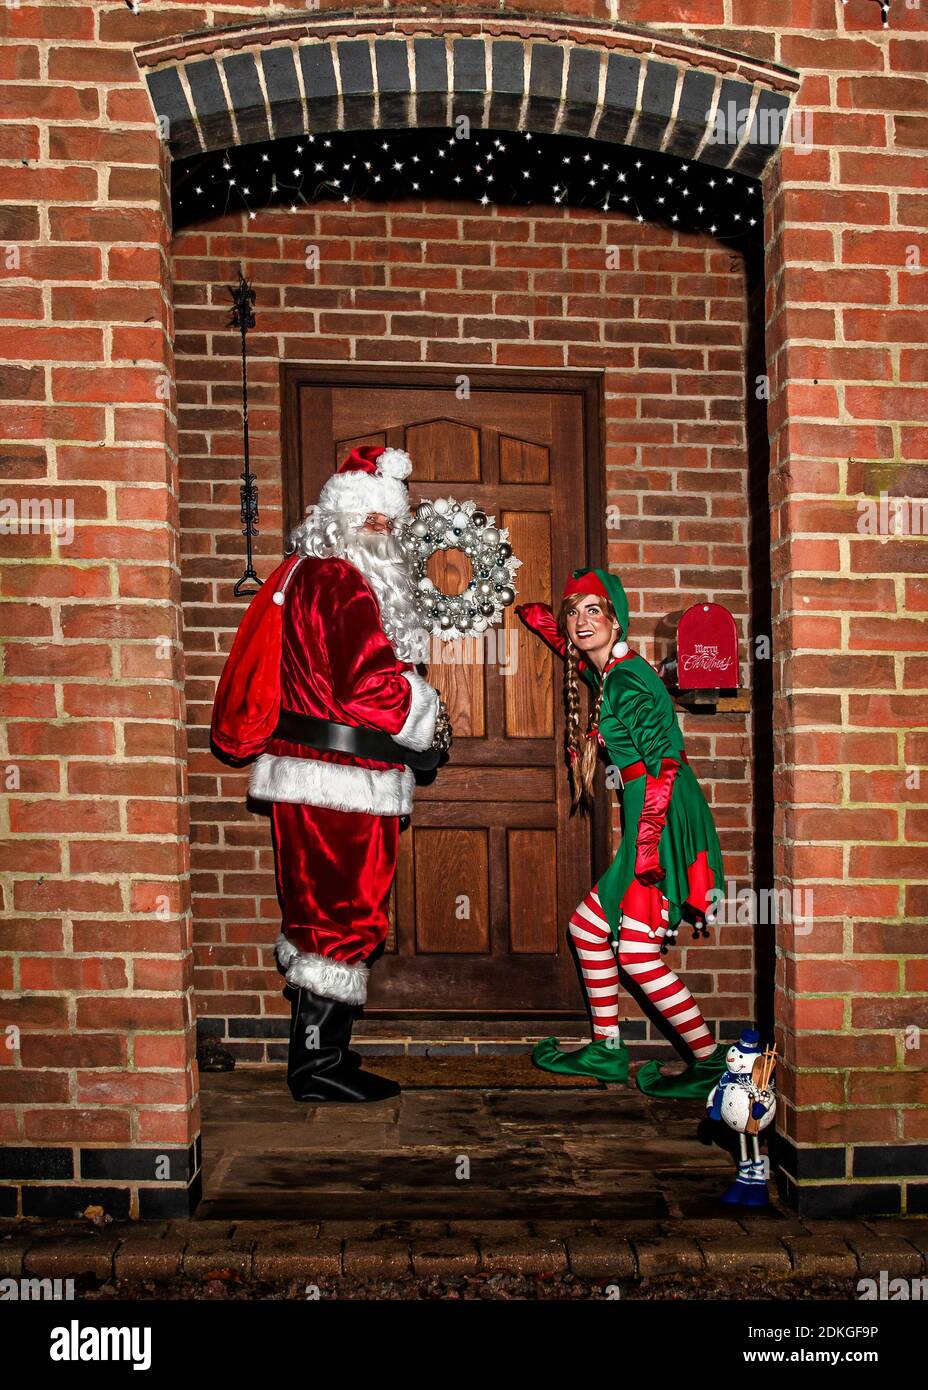 Royaume-Uni, Quorn - décembre 2020 : le Père Noël et un Elf se faufilent devant une porte lorsqu'ils livrent des cadeaux Banque D'Images